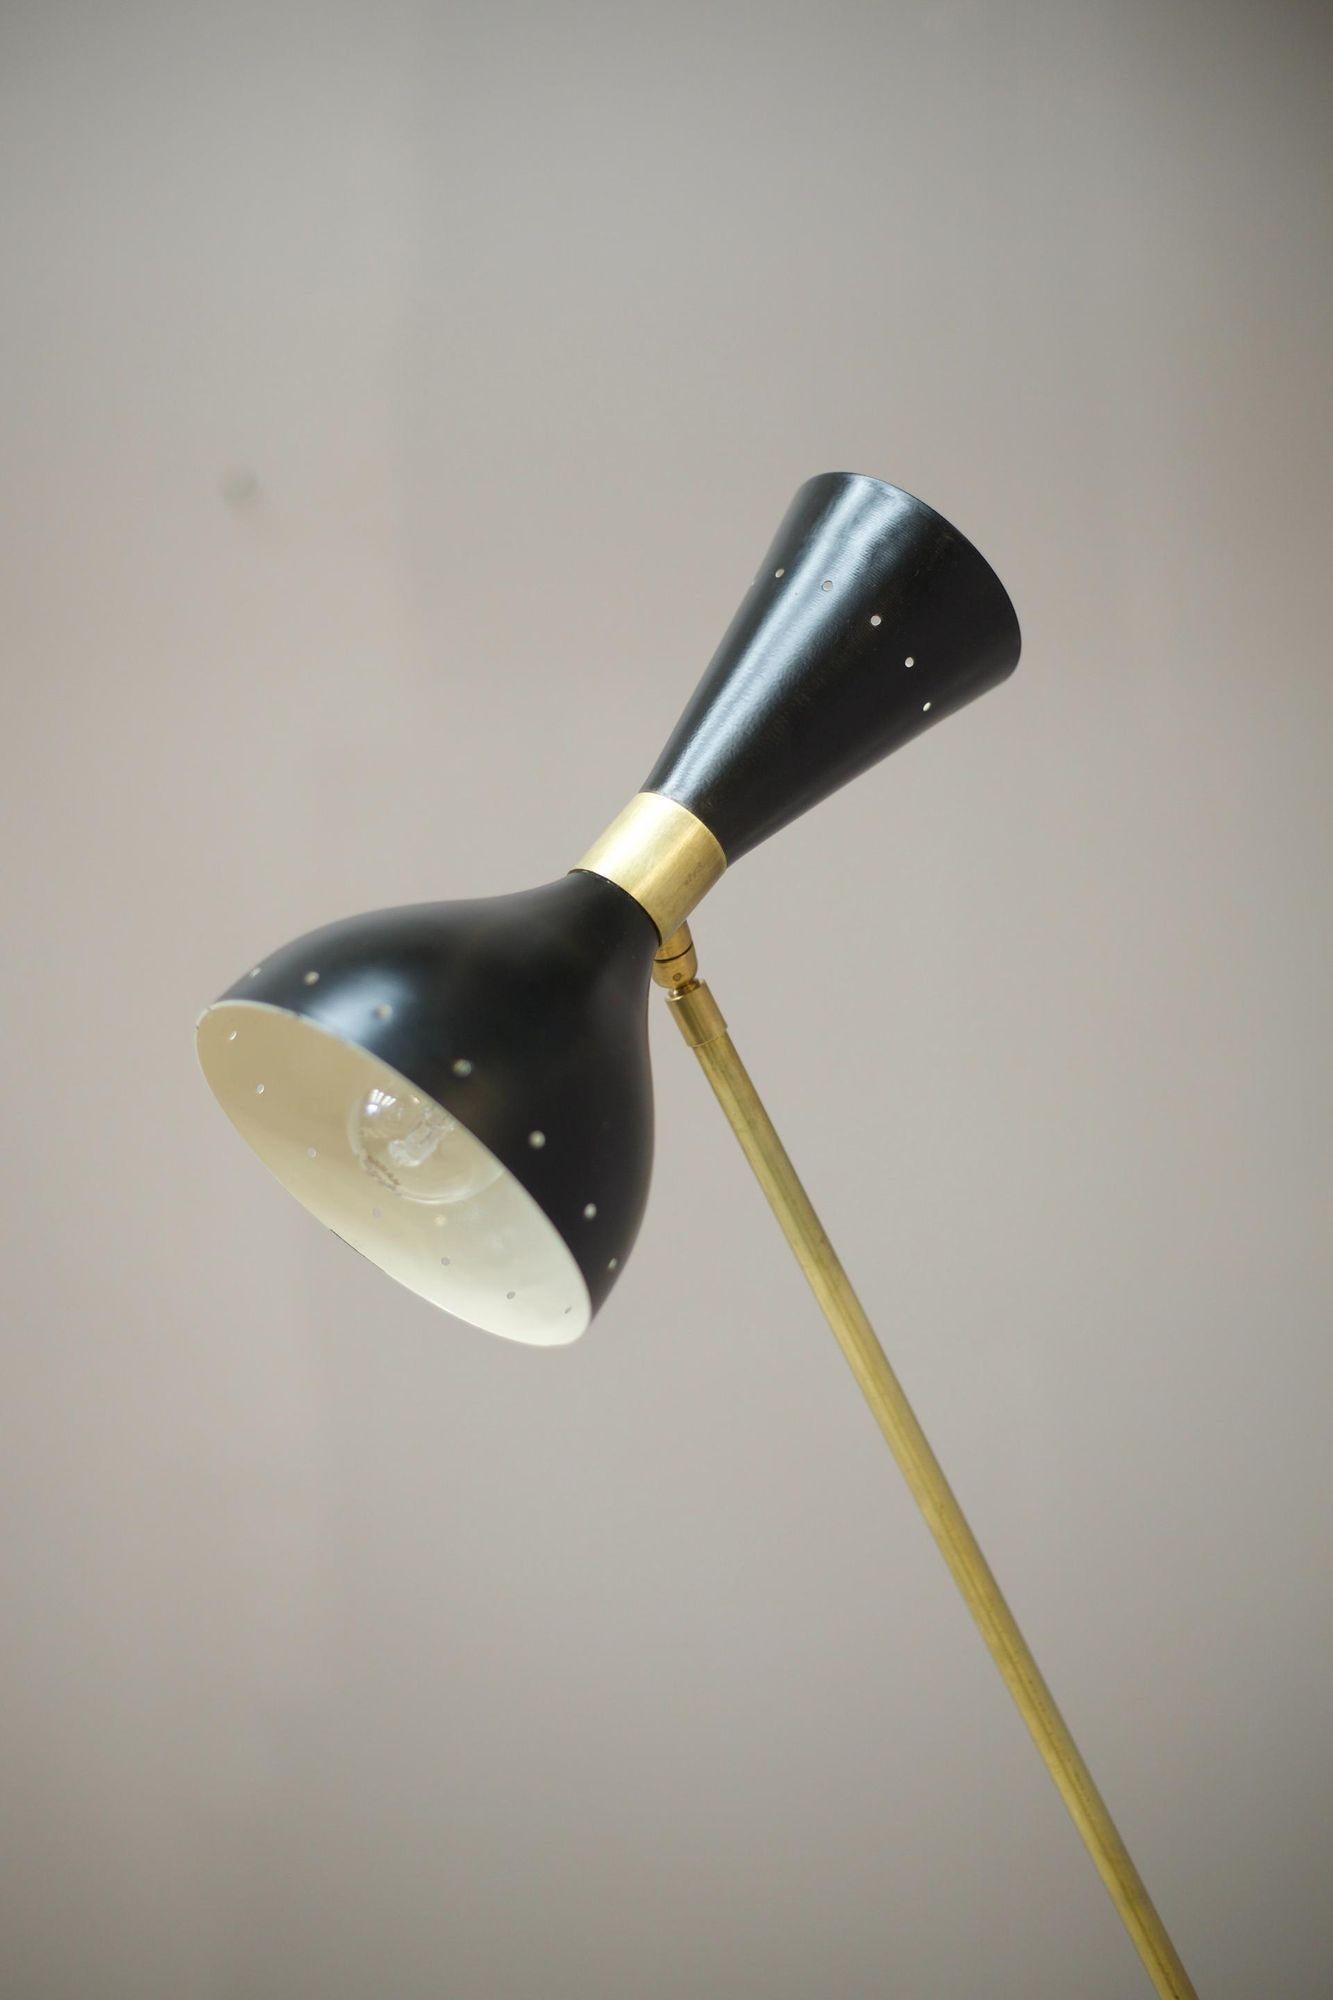 Dies ist eine sehr stilvolle italienische Stehlampe aus der Mitte des Jahrhunderts von Stilnovo. Hergestellt aus Messing mit schwarzem Schirm. Das Gesamtdesign ist mit seinem minimalen Profil und seiner schlanken Natur mühelos beeindruckend. Der